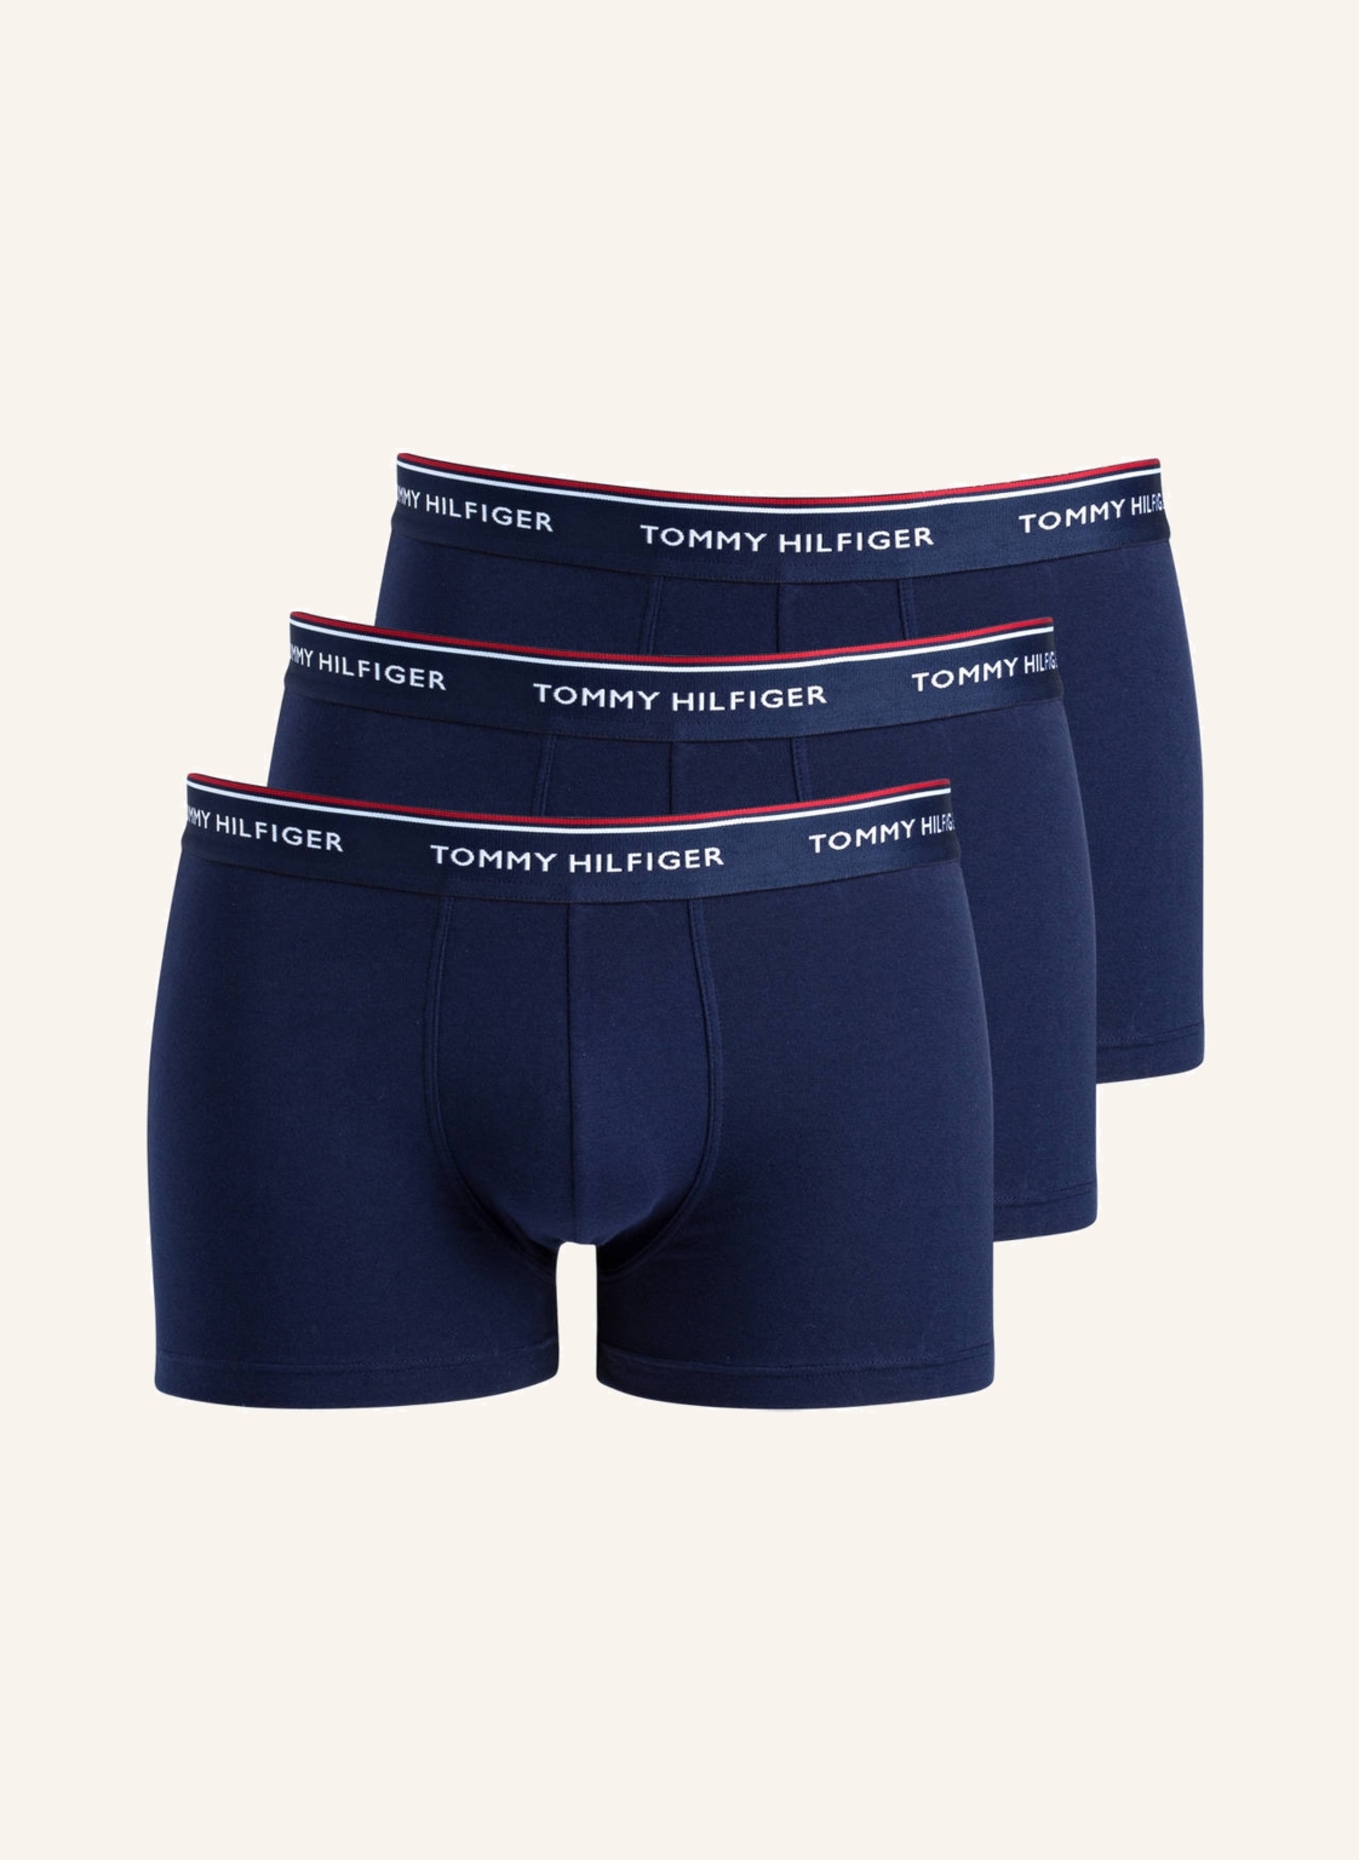 TOMMY HILFIGER 3er-Pack Boxershorts, Farbe: NAVY (Bild 1)